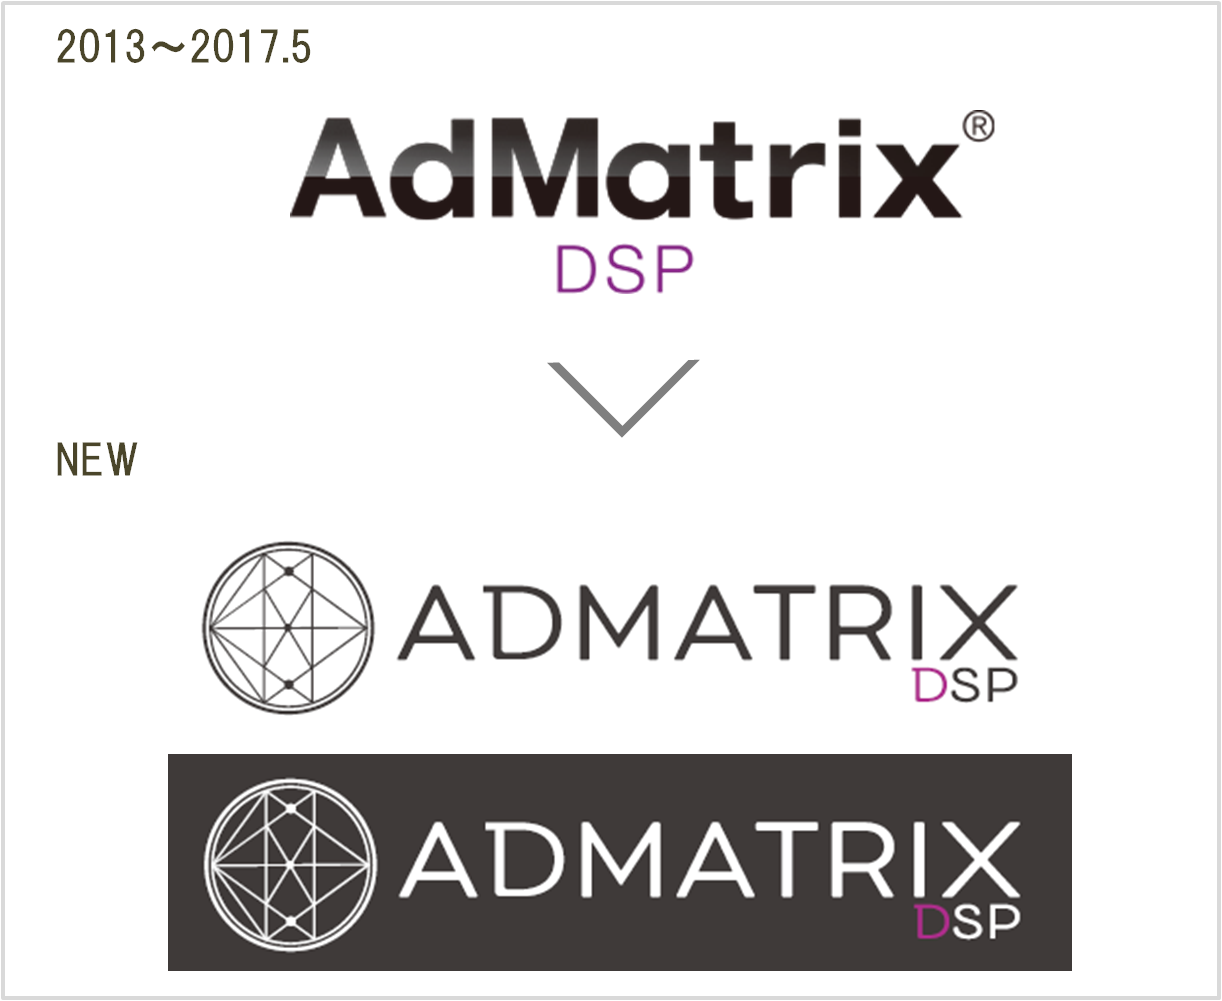 ADMATRIX DSP